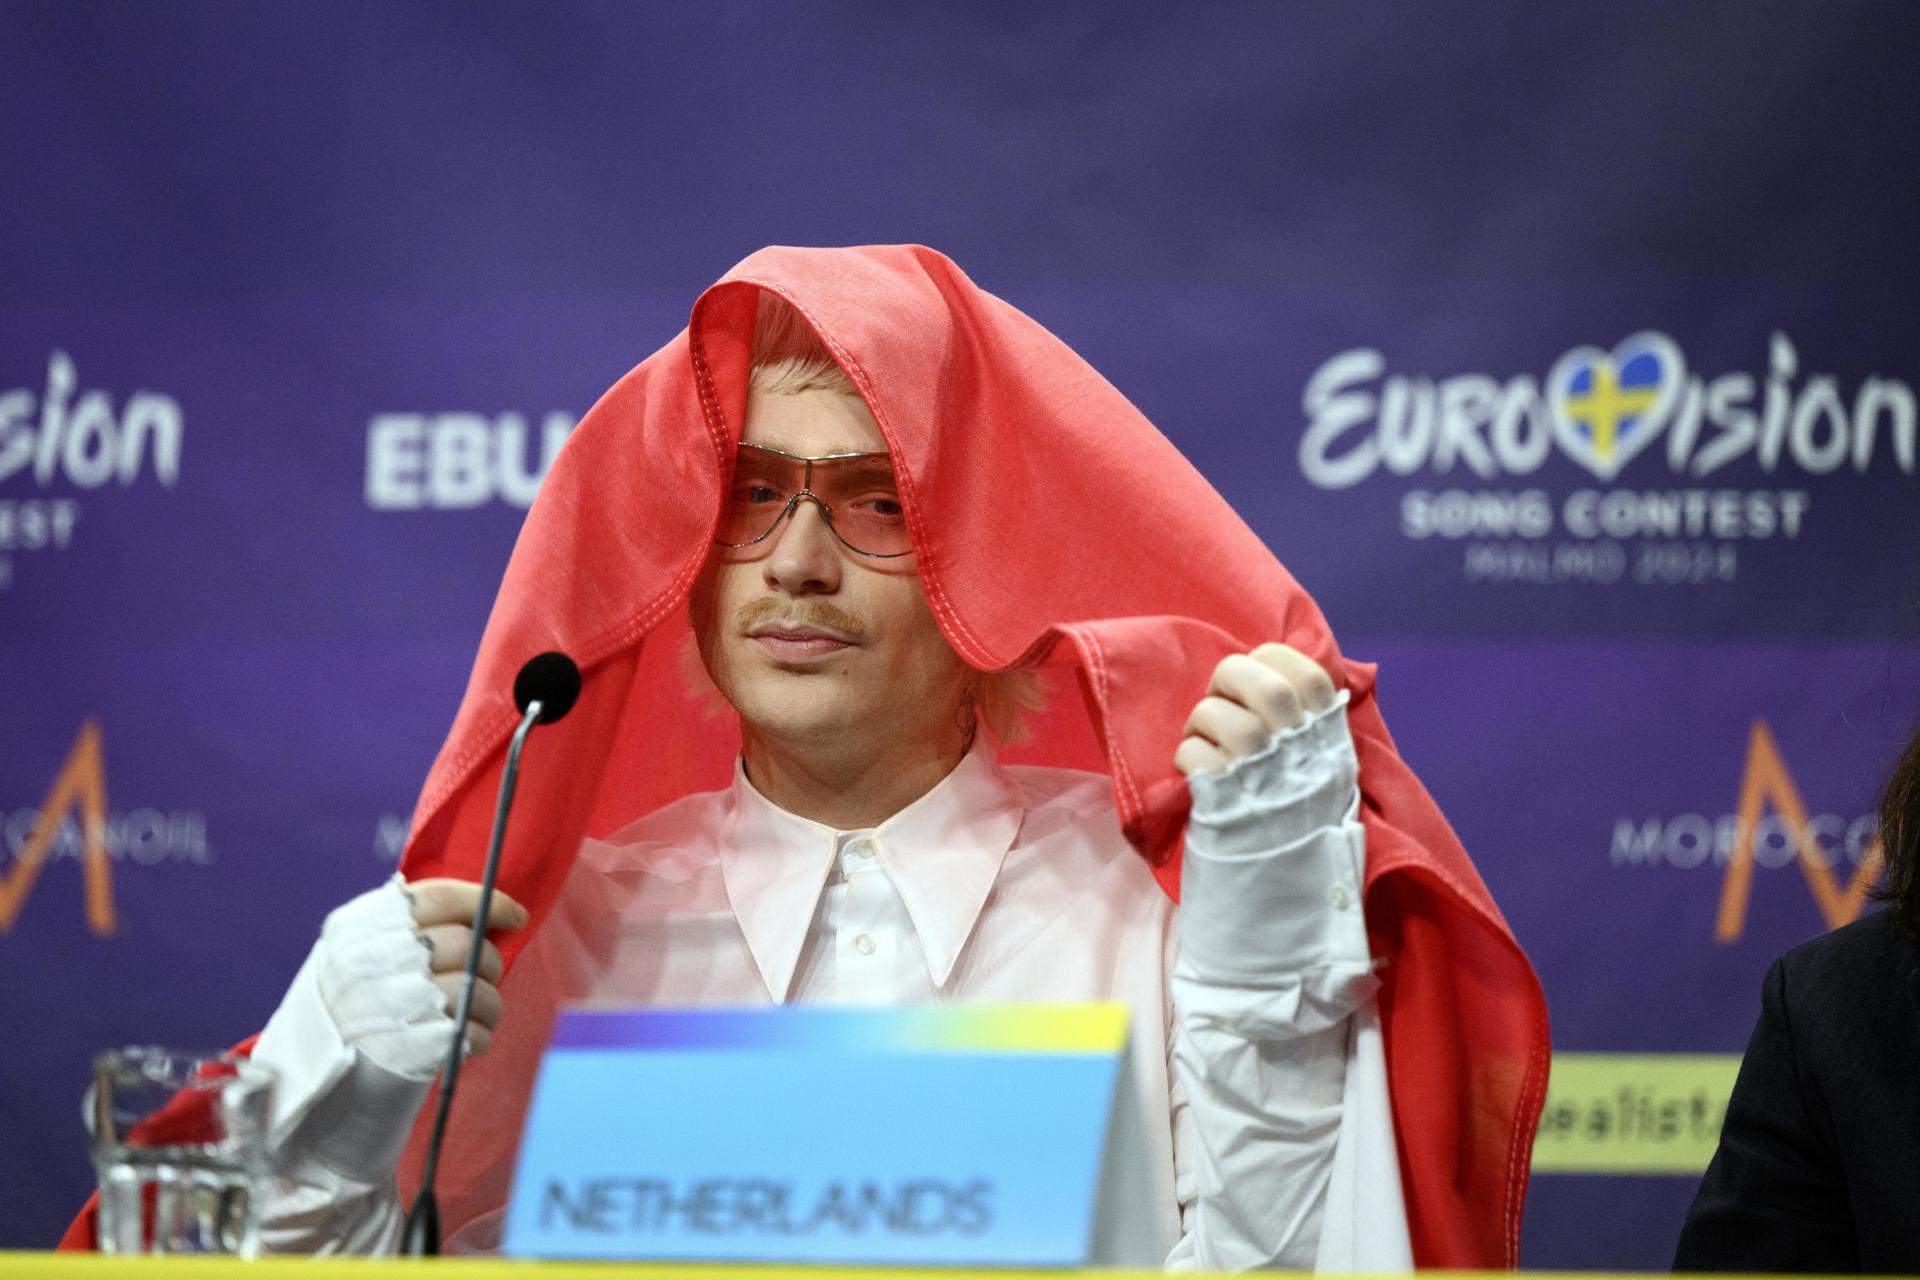 Eurovisión expulsa a los Países Bajos de la final por el "comportamiento inapropiado" del candidato